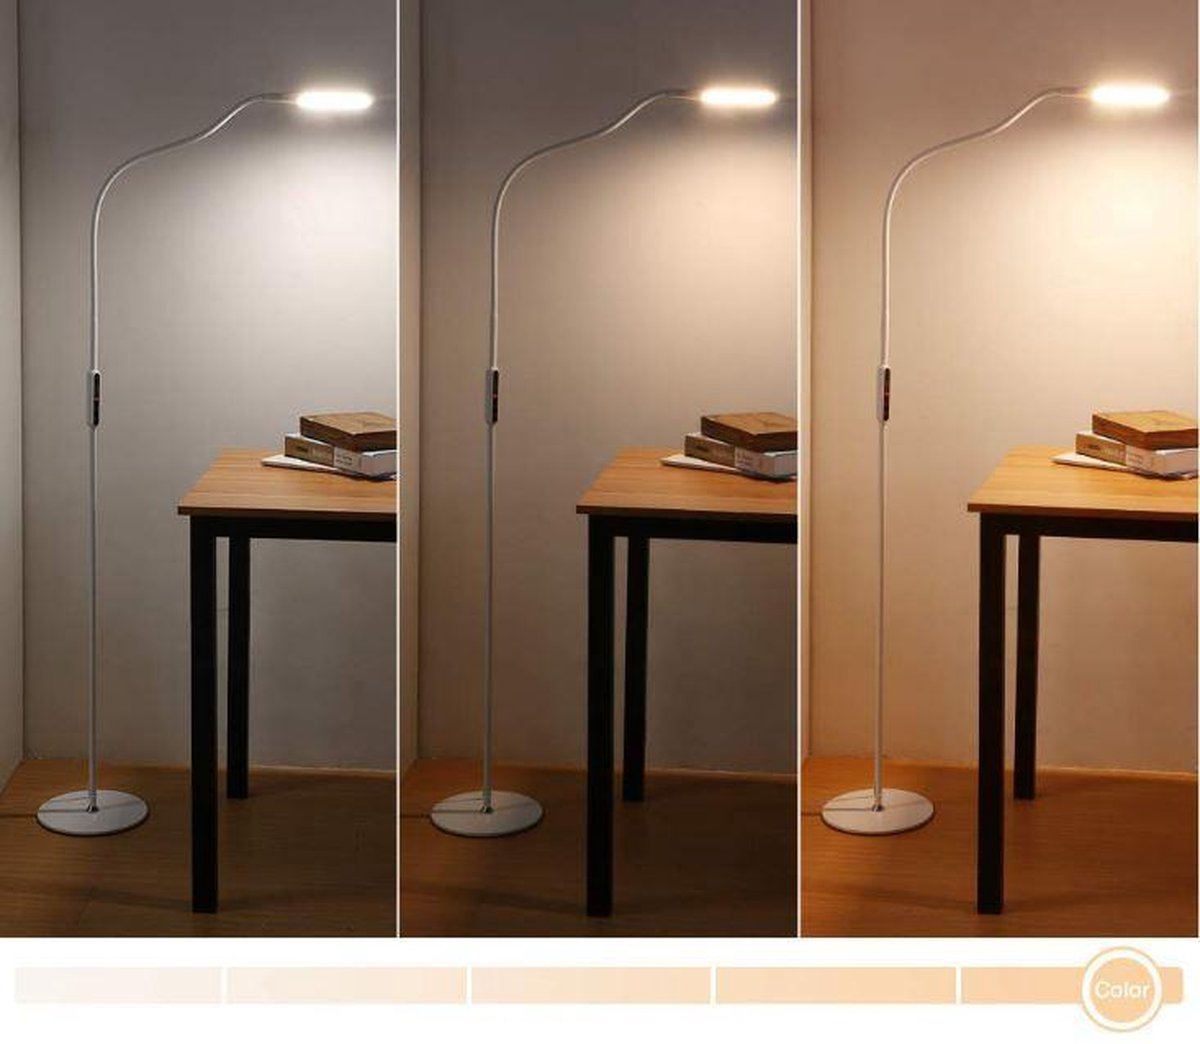 9W Lampadaire LED, Lampadaire sur Pied Salon, Télécommande, avec Luminosité  Réglable, col de cygne D'angle Lampe